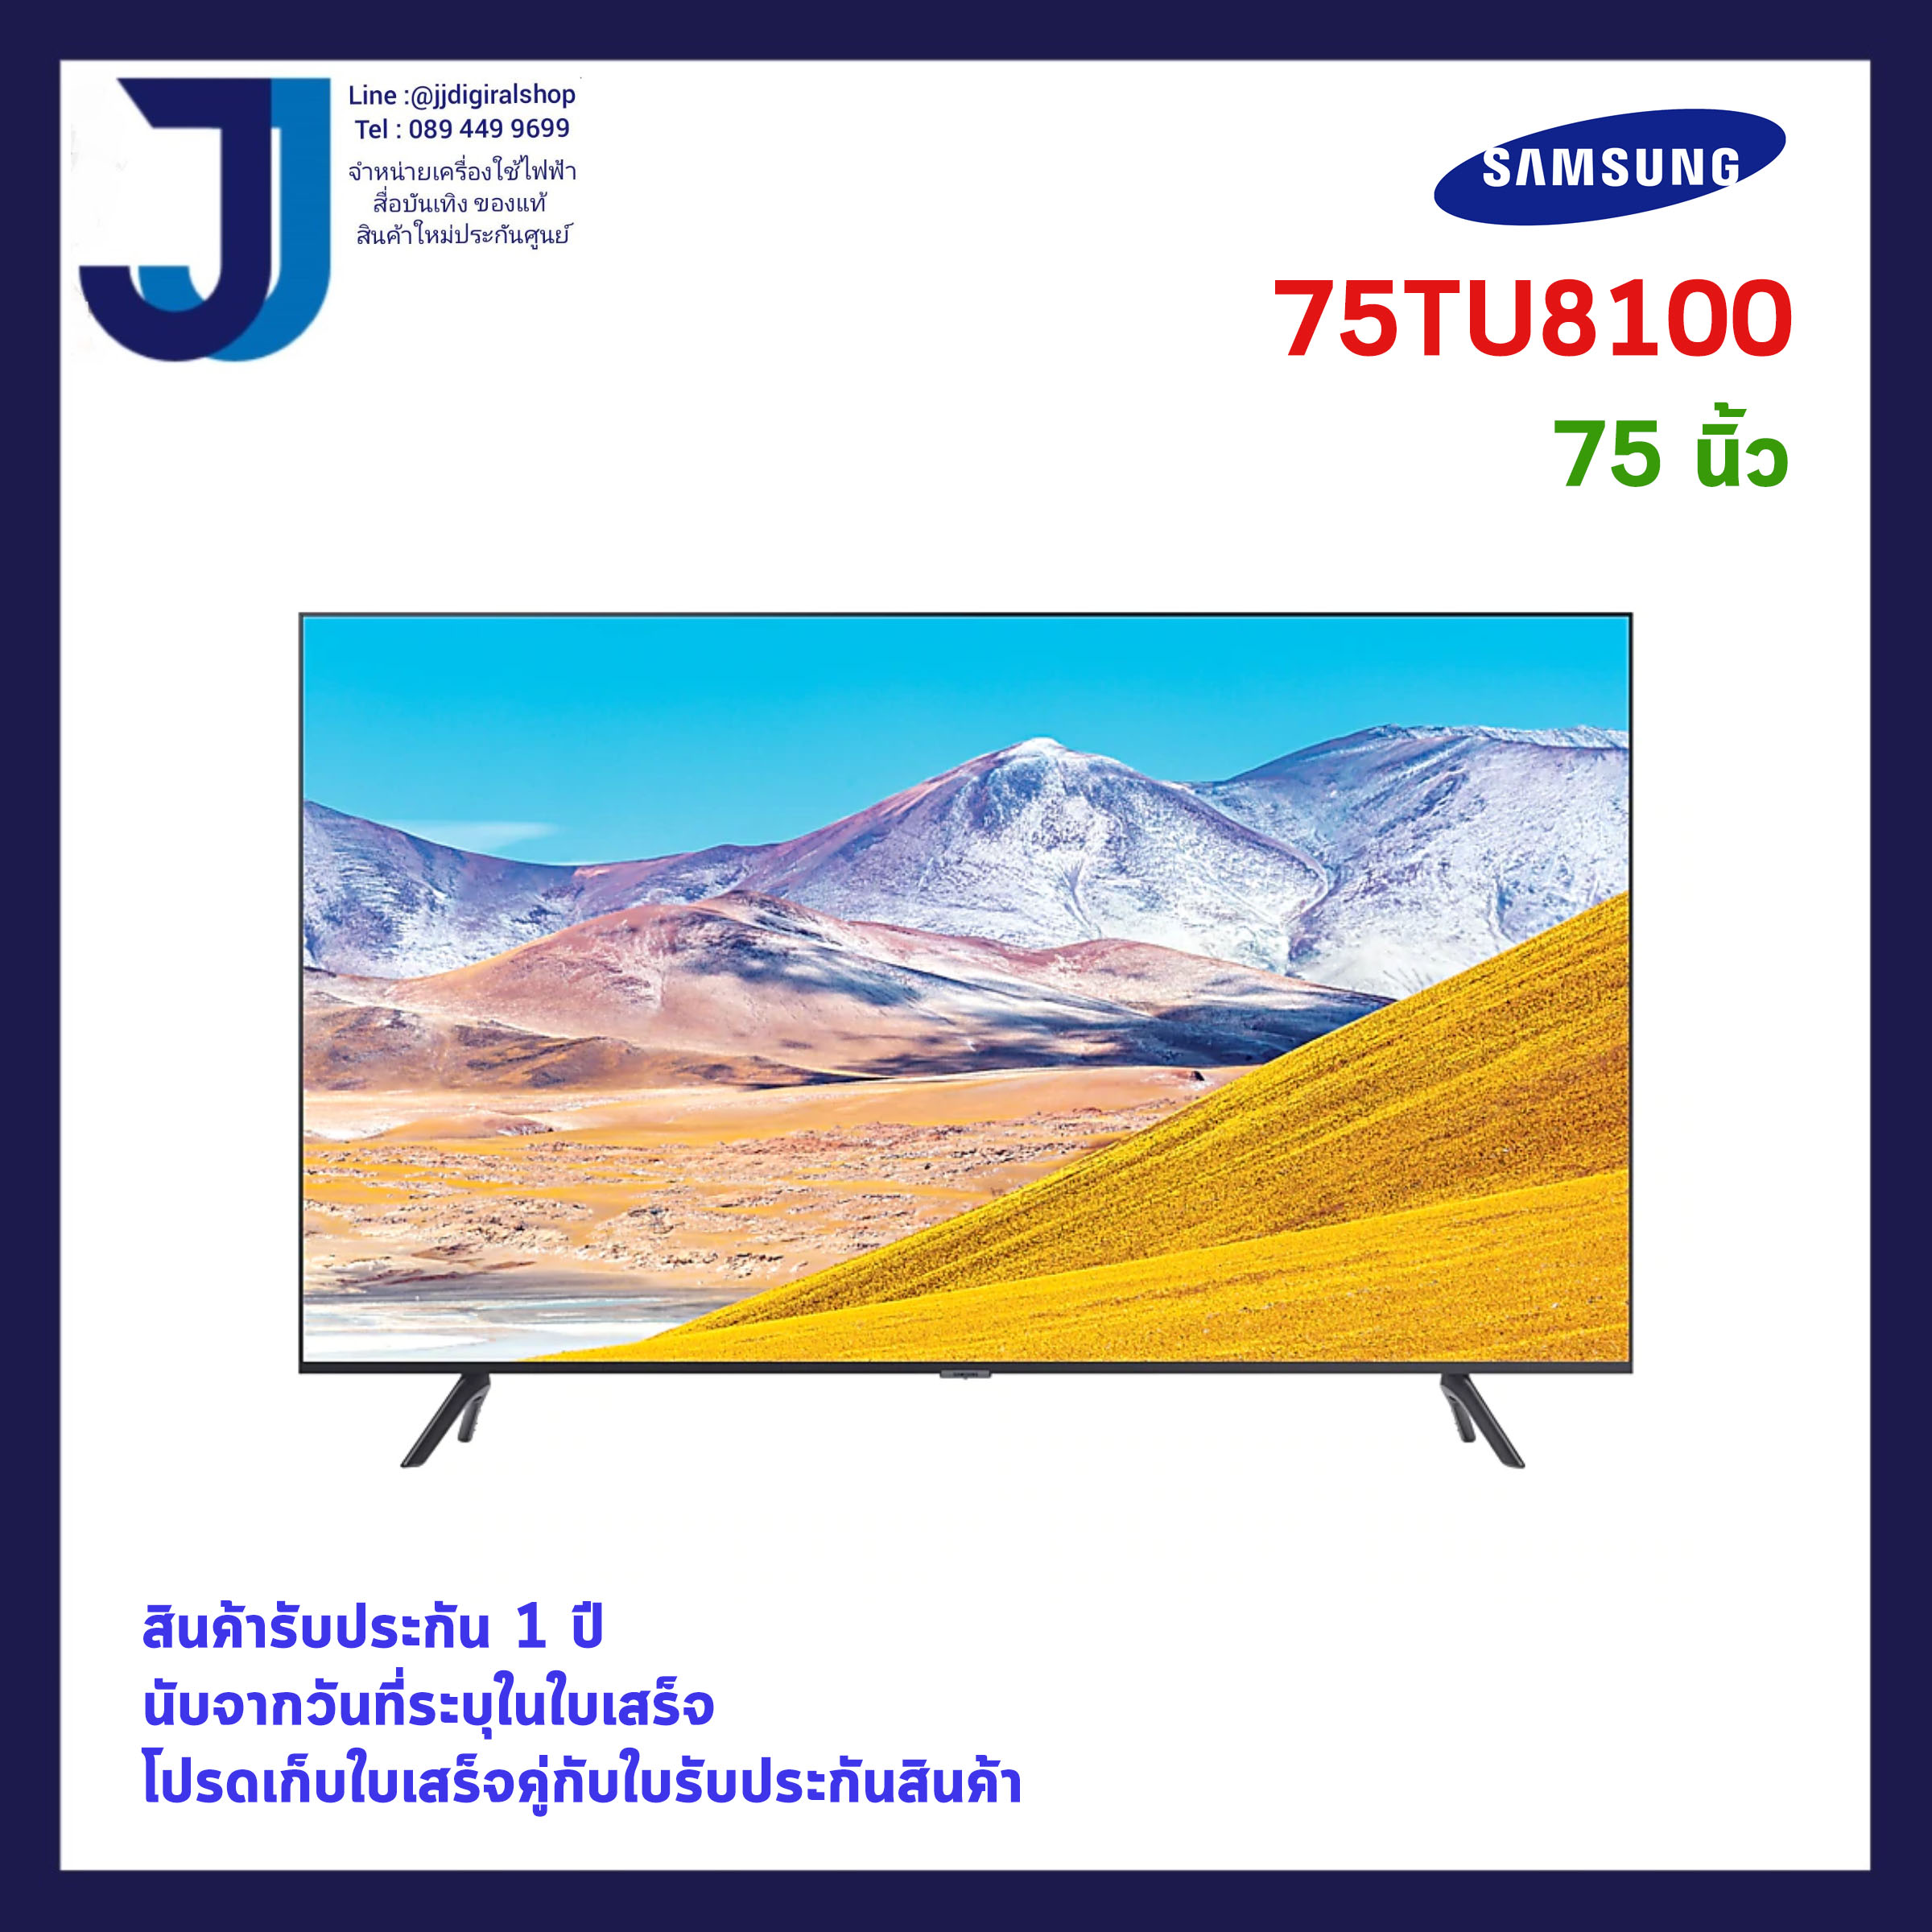 Crystal UHD 4K Smart TV (2020) 75 นิ้ว รุ่น UA75TU8100KXXT